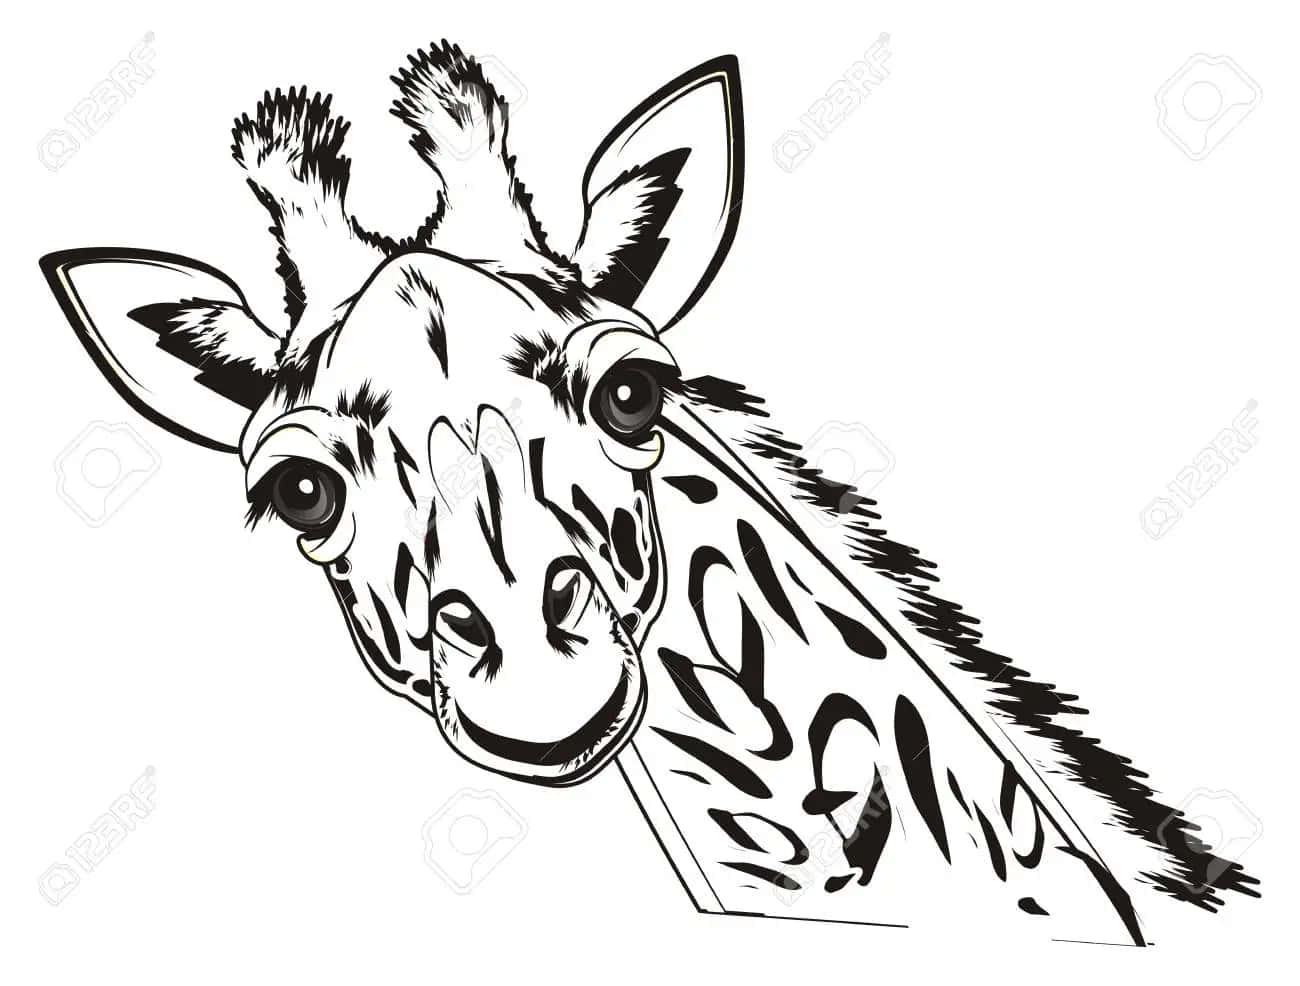 Lustigesdigitales Skizzenbild Einer Giraffe